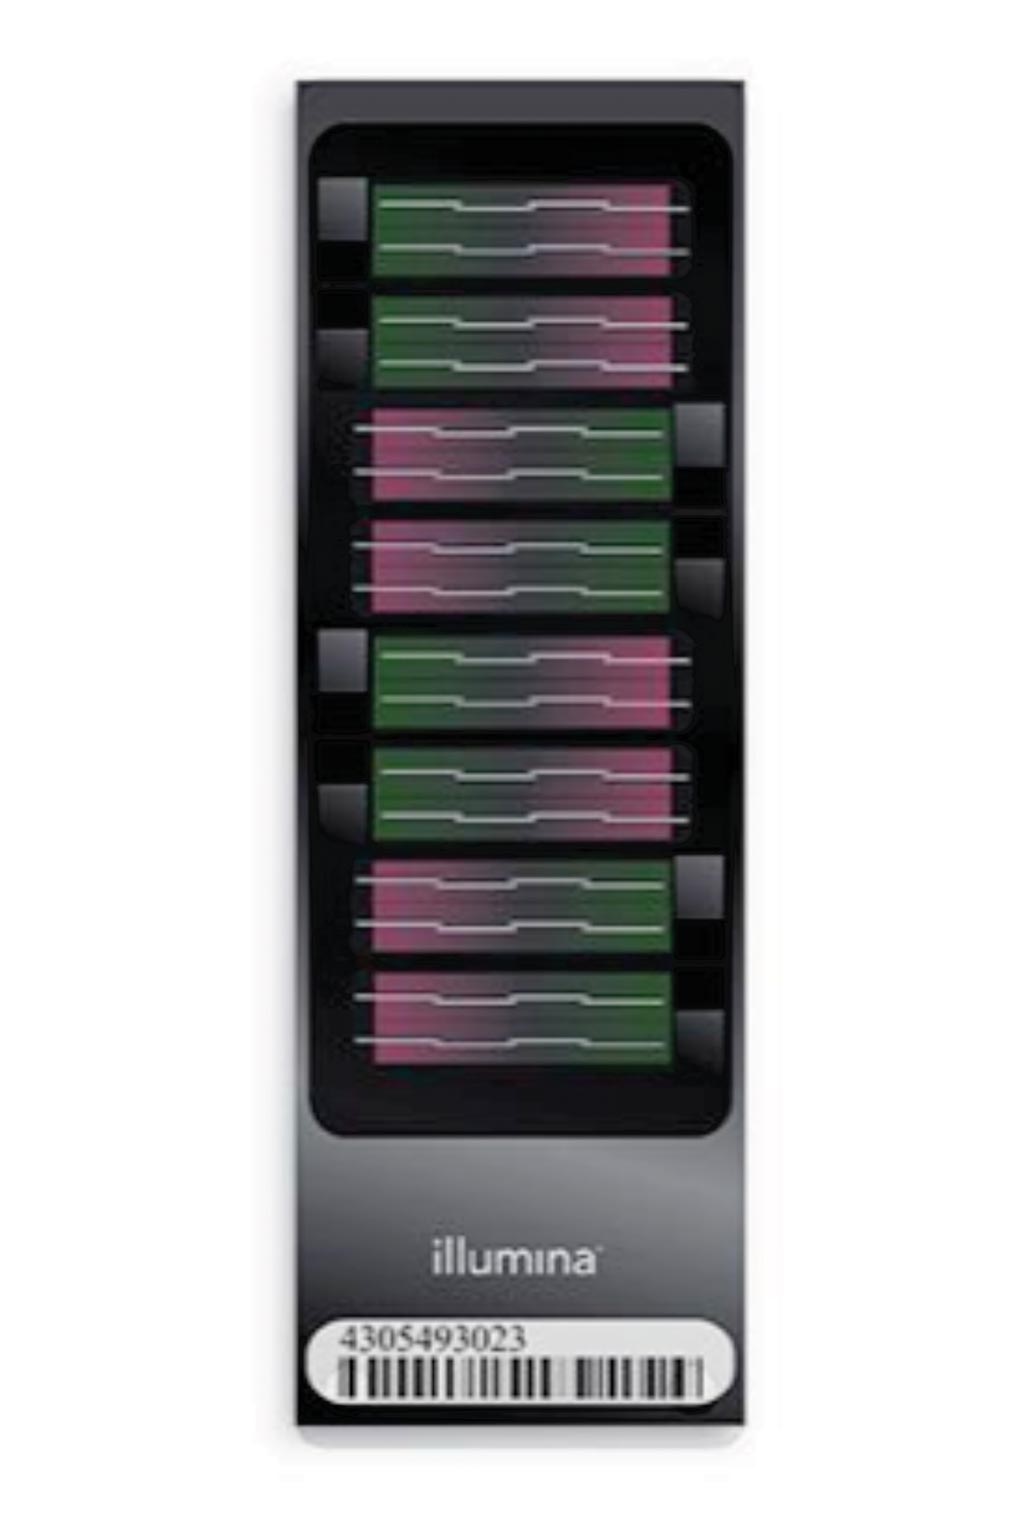 Imagen: El kit Infinium Human Methylation 450K BeadChip: un microarray robusto de análisis de metilación con amplia cobertura de islas CpG, genes y potenciadores utilizado para estudios de asociación de todo el epigenoma (Fotografía cortesía de Illumina).